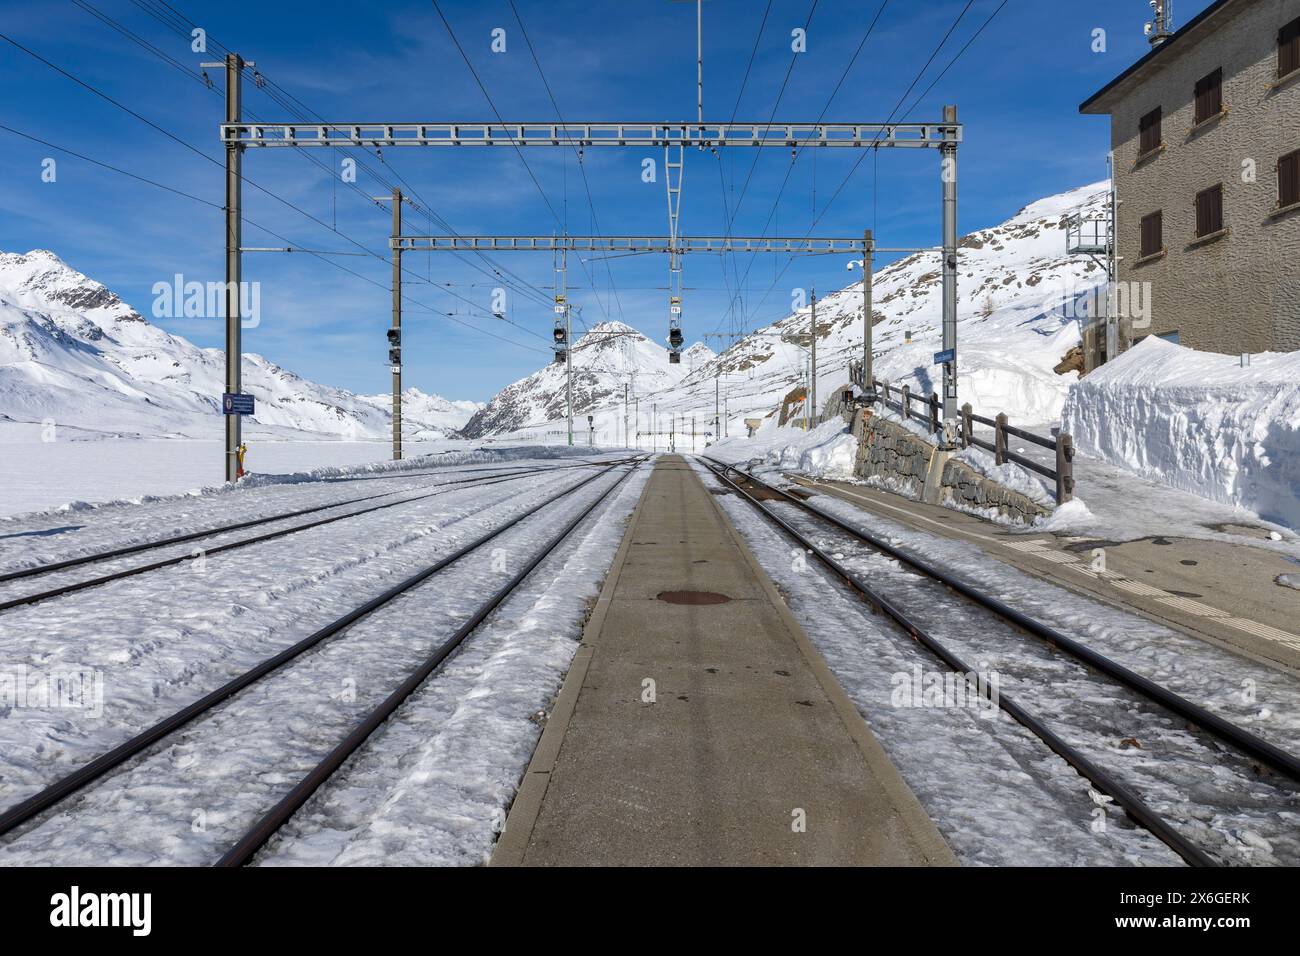 Stazione ferroviaria sul passo Bernina in Svizzera. Vista frontale dalla piattaforma ferroviaria e dai binari che appaiono dalla neve. Nessuno dentro Foto Stock